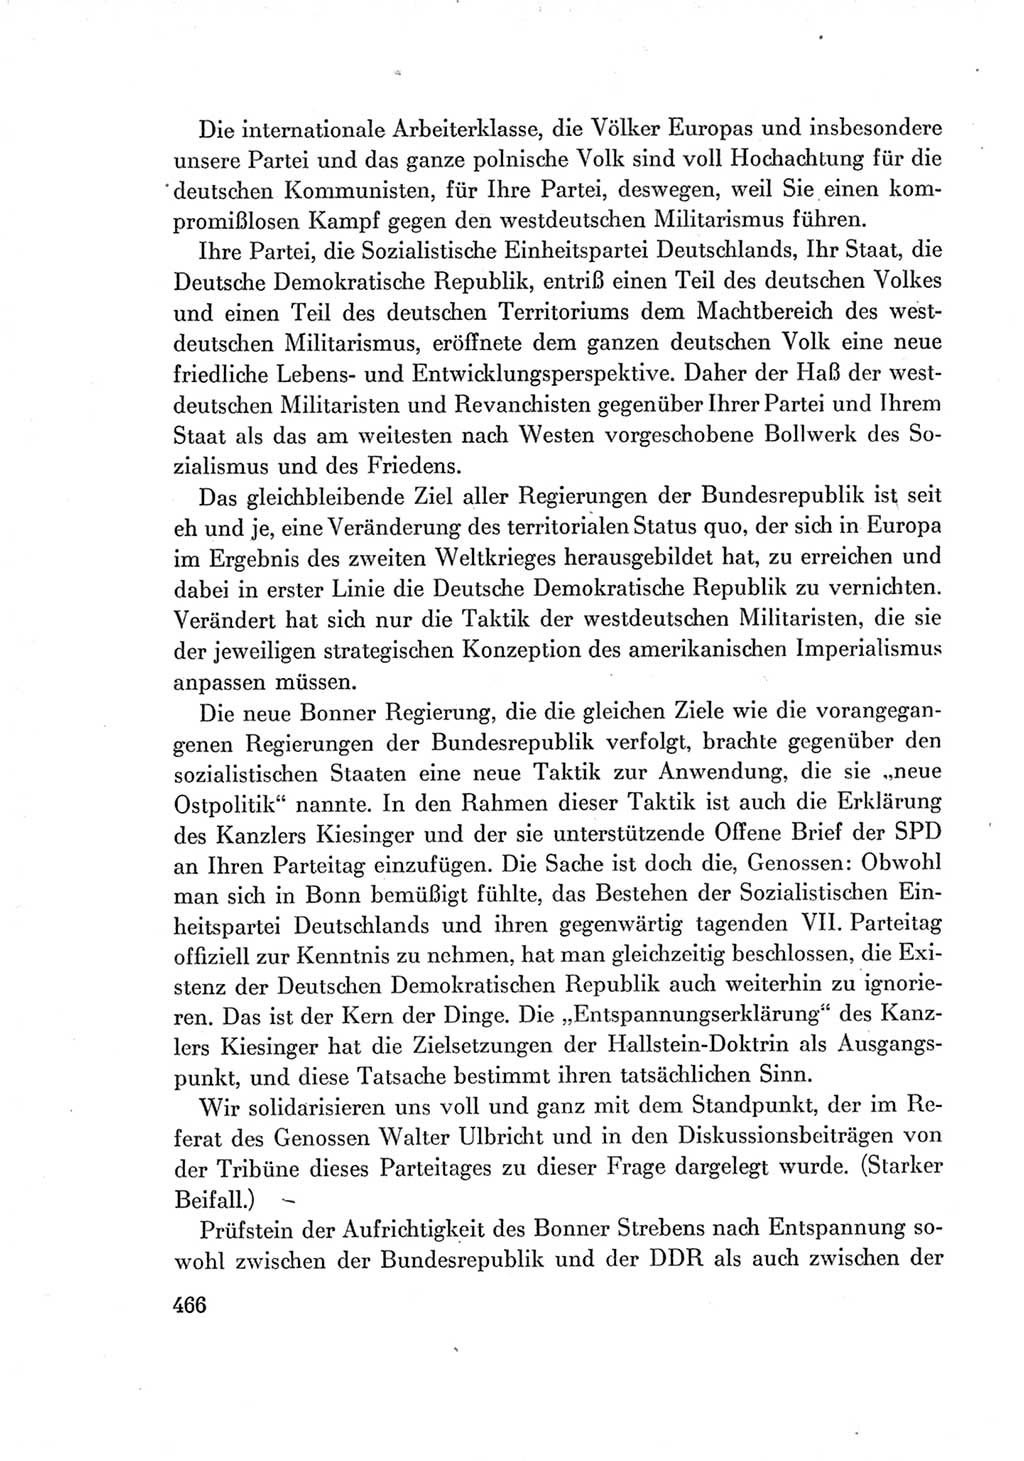 Protokoll der Verhandlungen des Ⅶ. Parteitages der Sozialistischen Einheitspartei Deutschlands (SED) [Deutsche Demokratische Republik (DDR)] 1967, Band Ⅰ, Seite 466 (Prot. Verh. Ⅶ. PT SED DDR 1967, Bd. Ⅰ, S. 466)